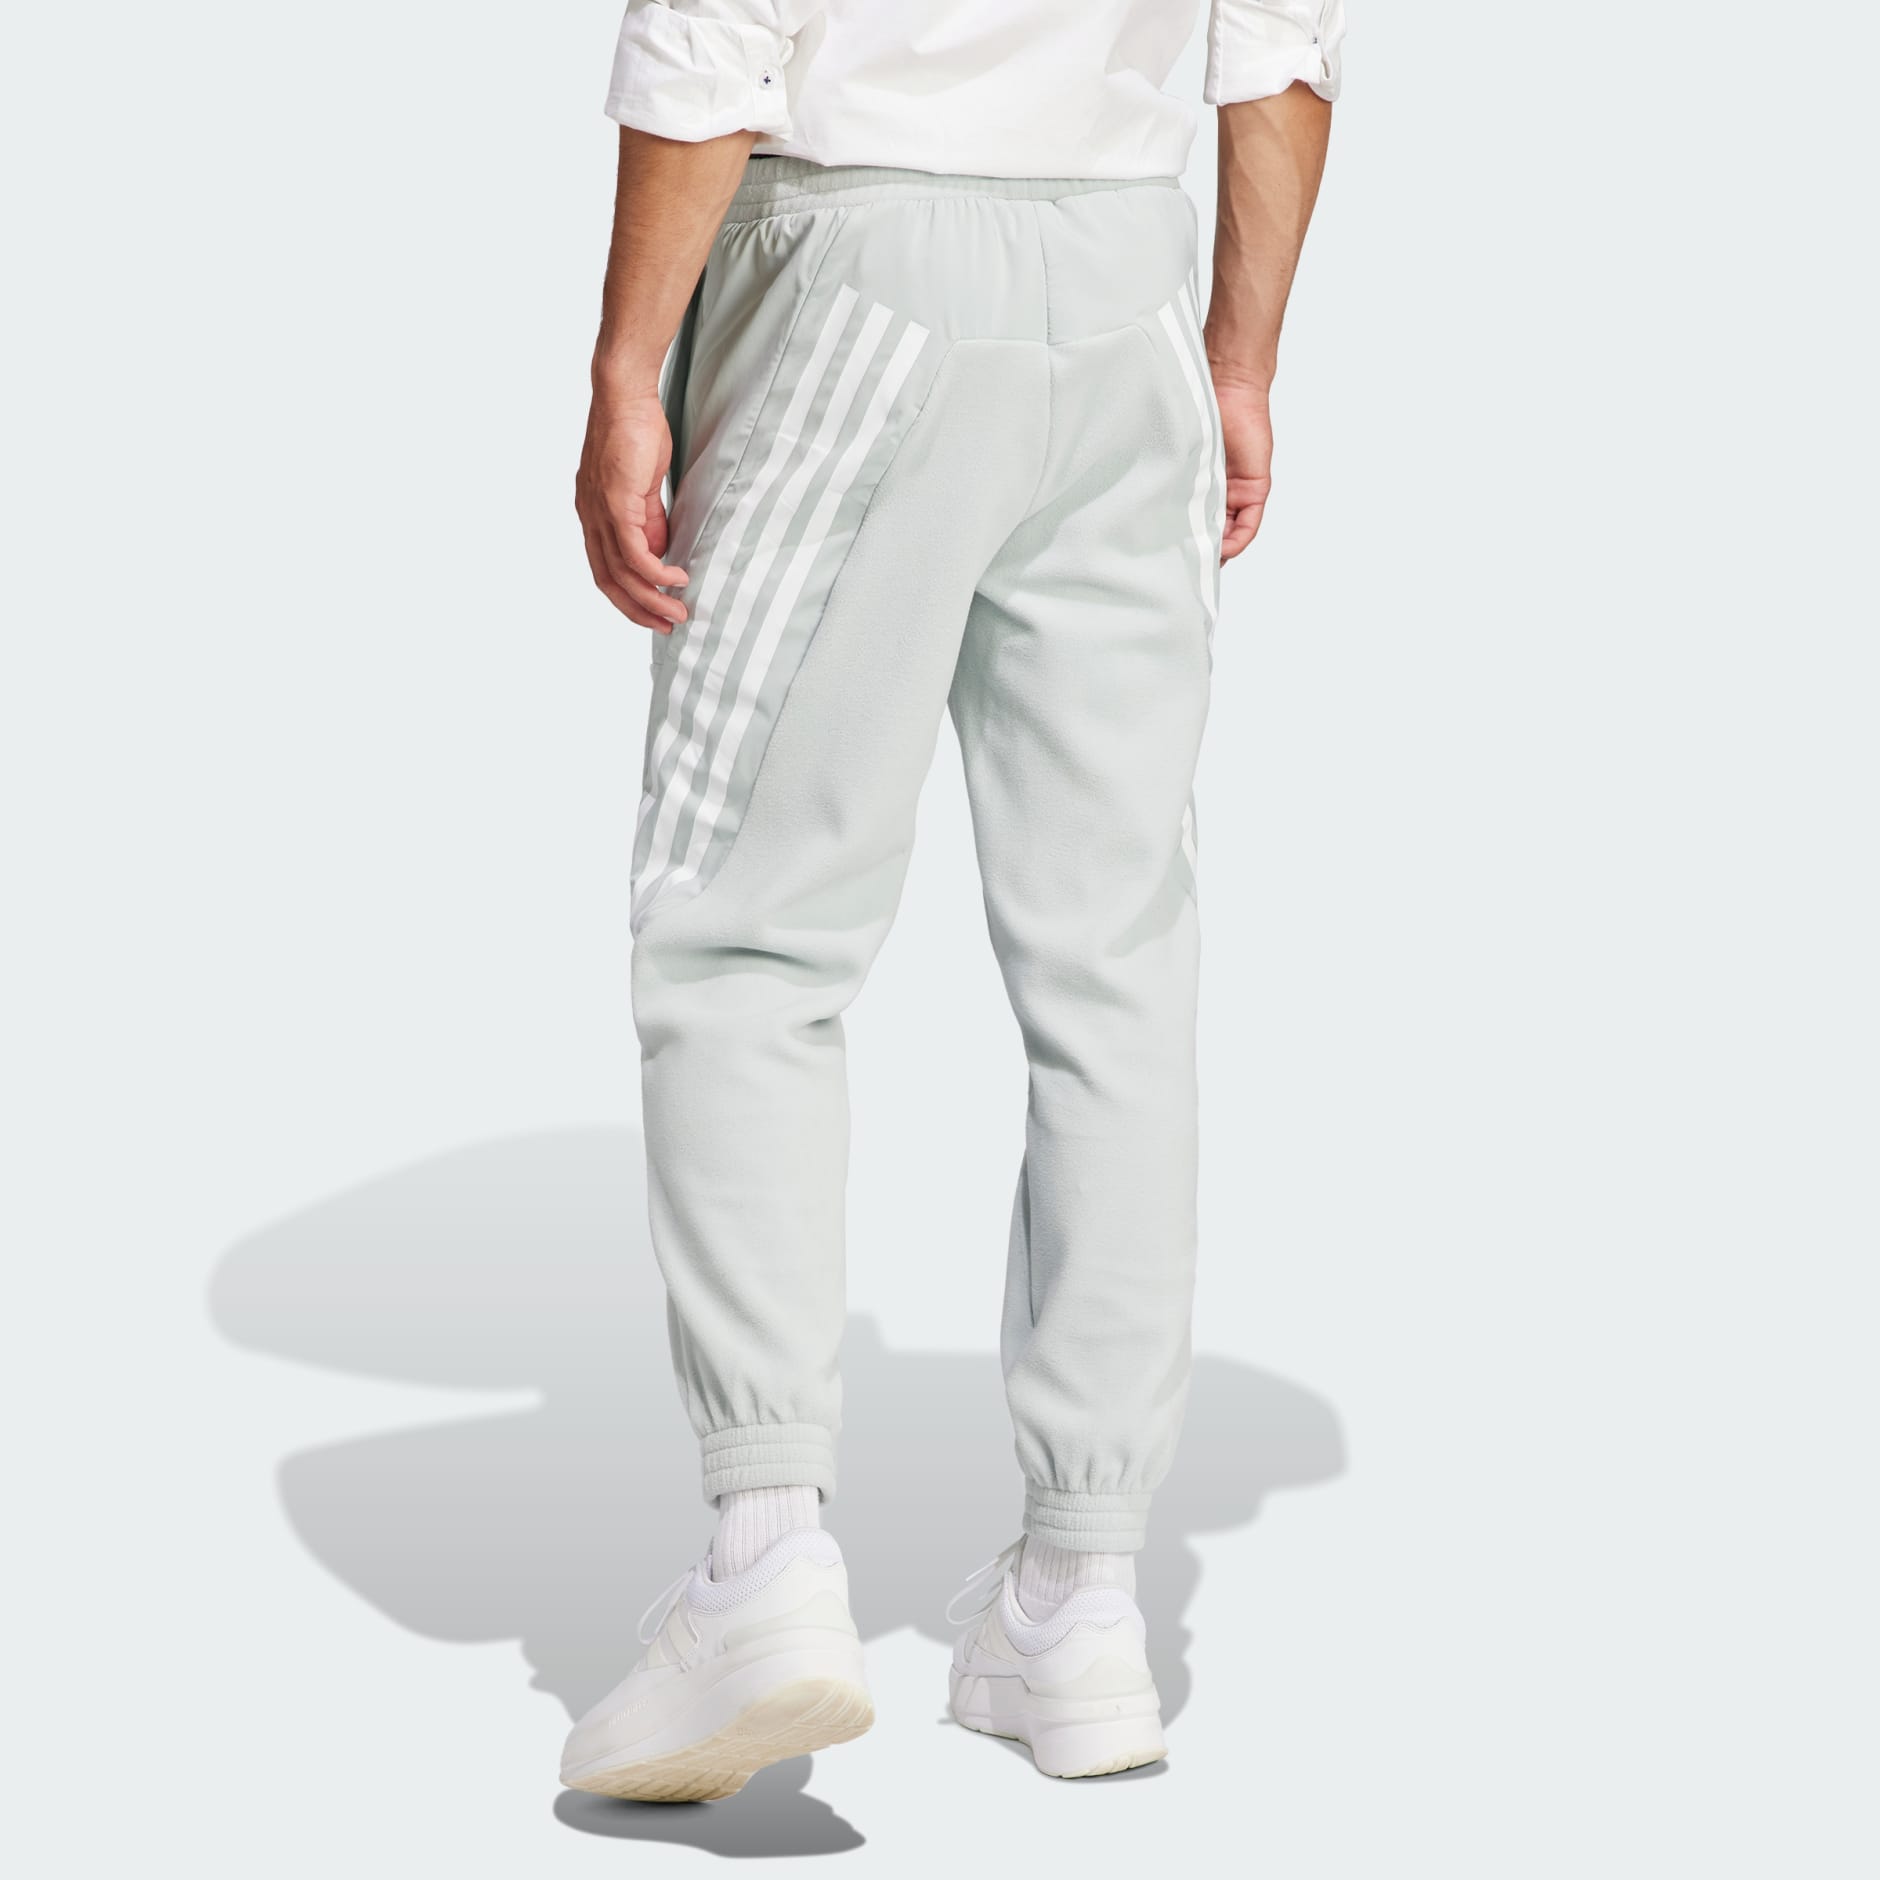 adidas Future Icons 3-Stripes Pants - Grey | adidas UAE